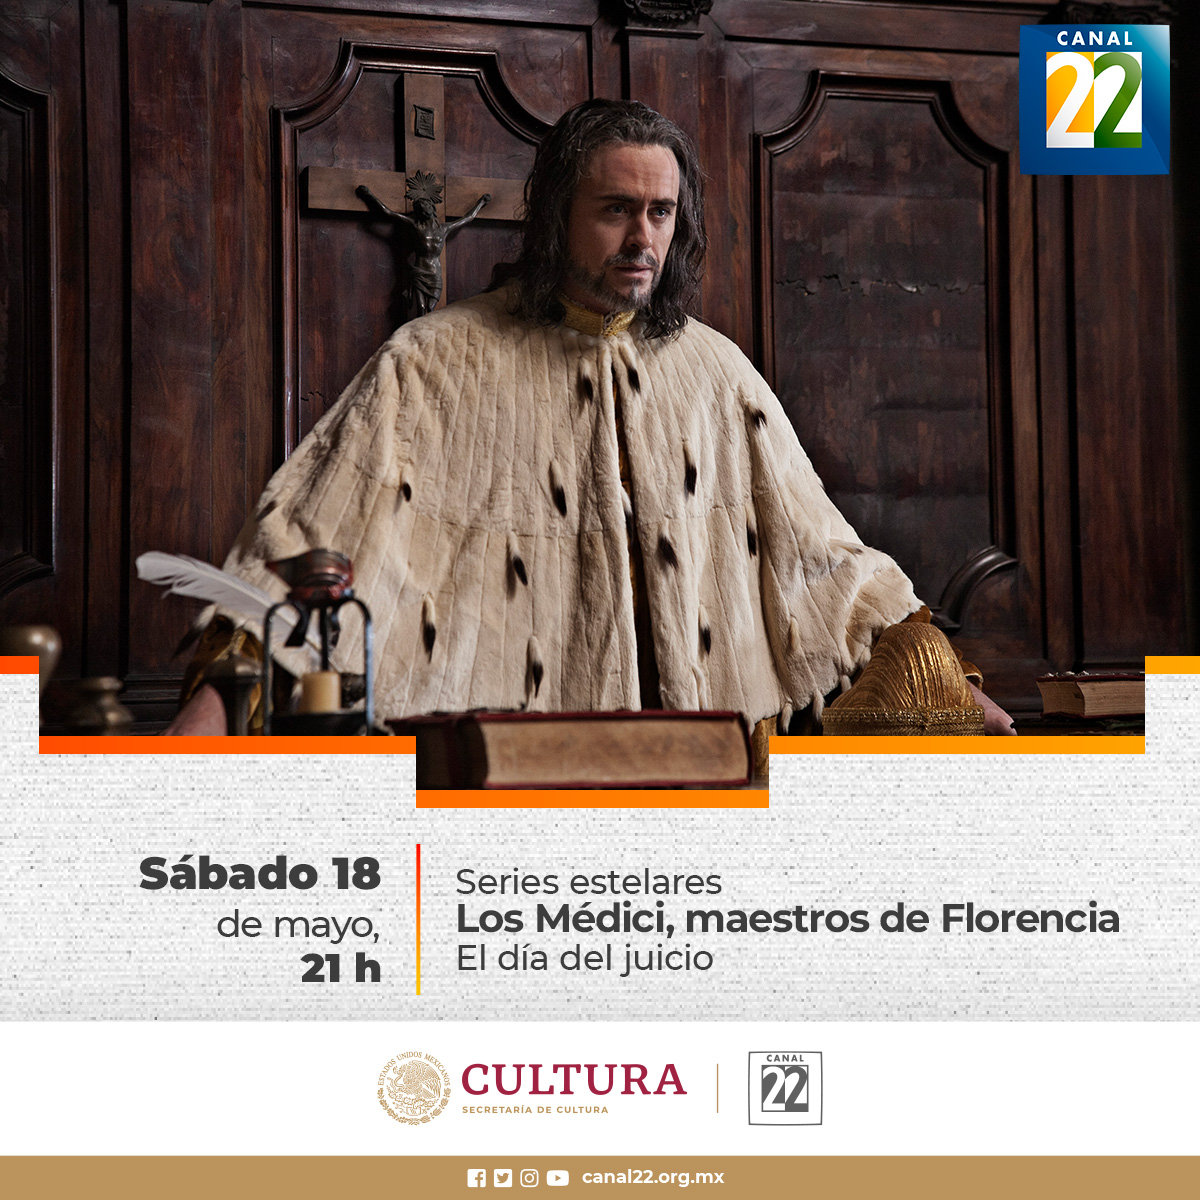 ¡Es noche de #SeriesEstelares! 📺🤩 Disfruta un nuevo episodio de “Los Médici, maestros de Florencia”, #ElDiaDelJuicio sólo por #Canal22 ✨ 🕦Hoy, 21:00 h